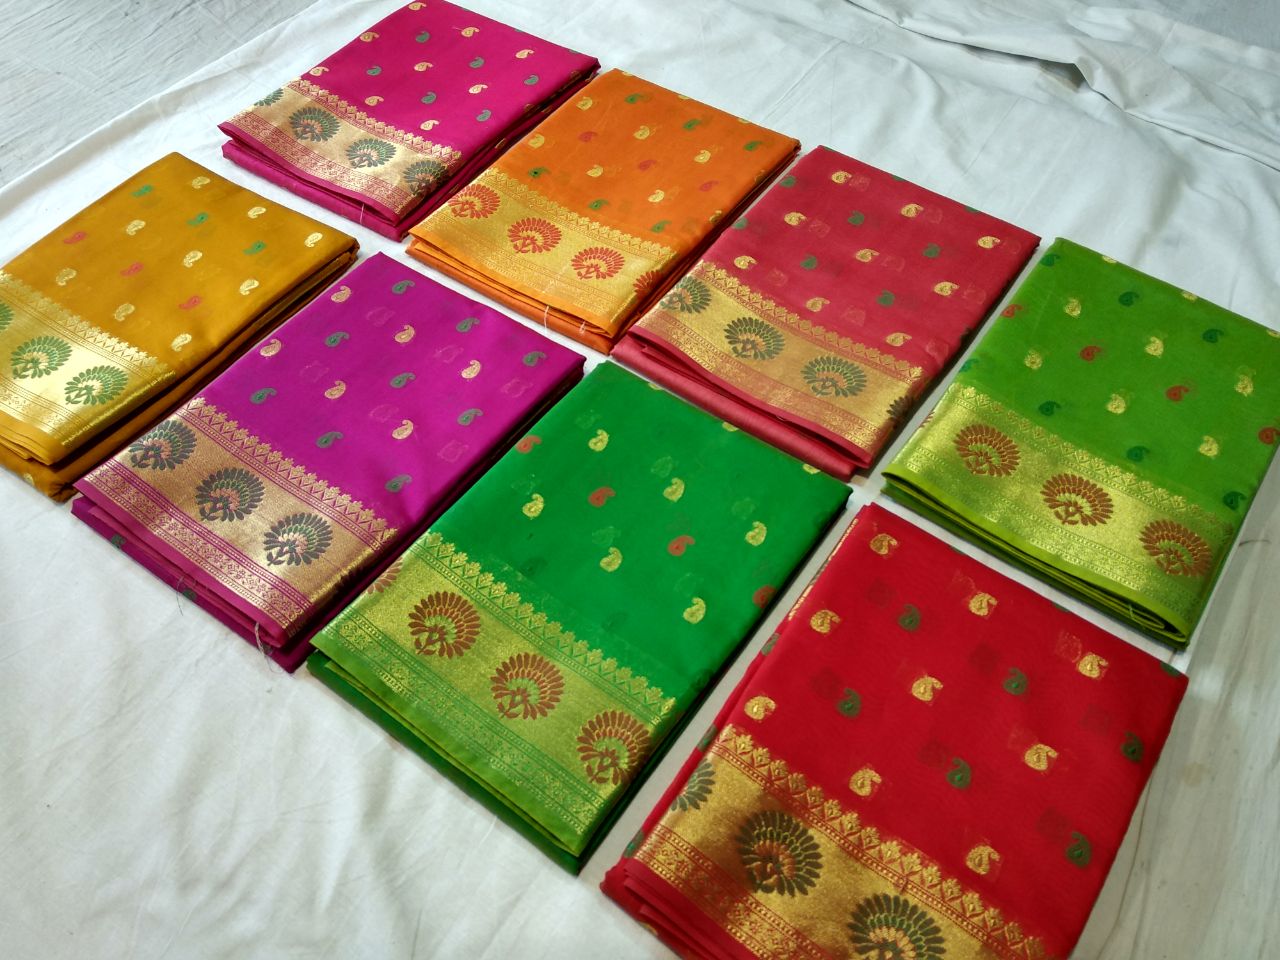 Banarasi Silk Cotton Saree-SKCSRE001 red and green coloured dailywear saree